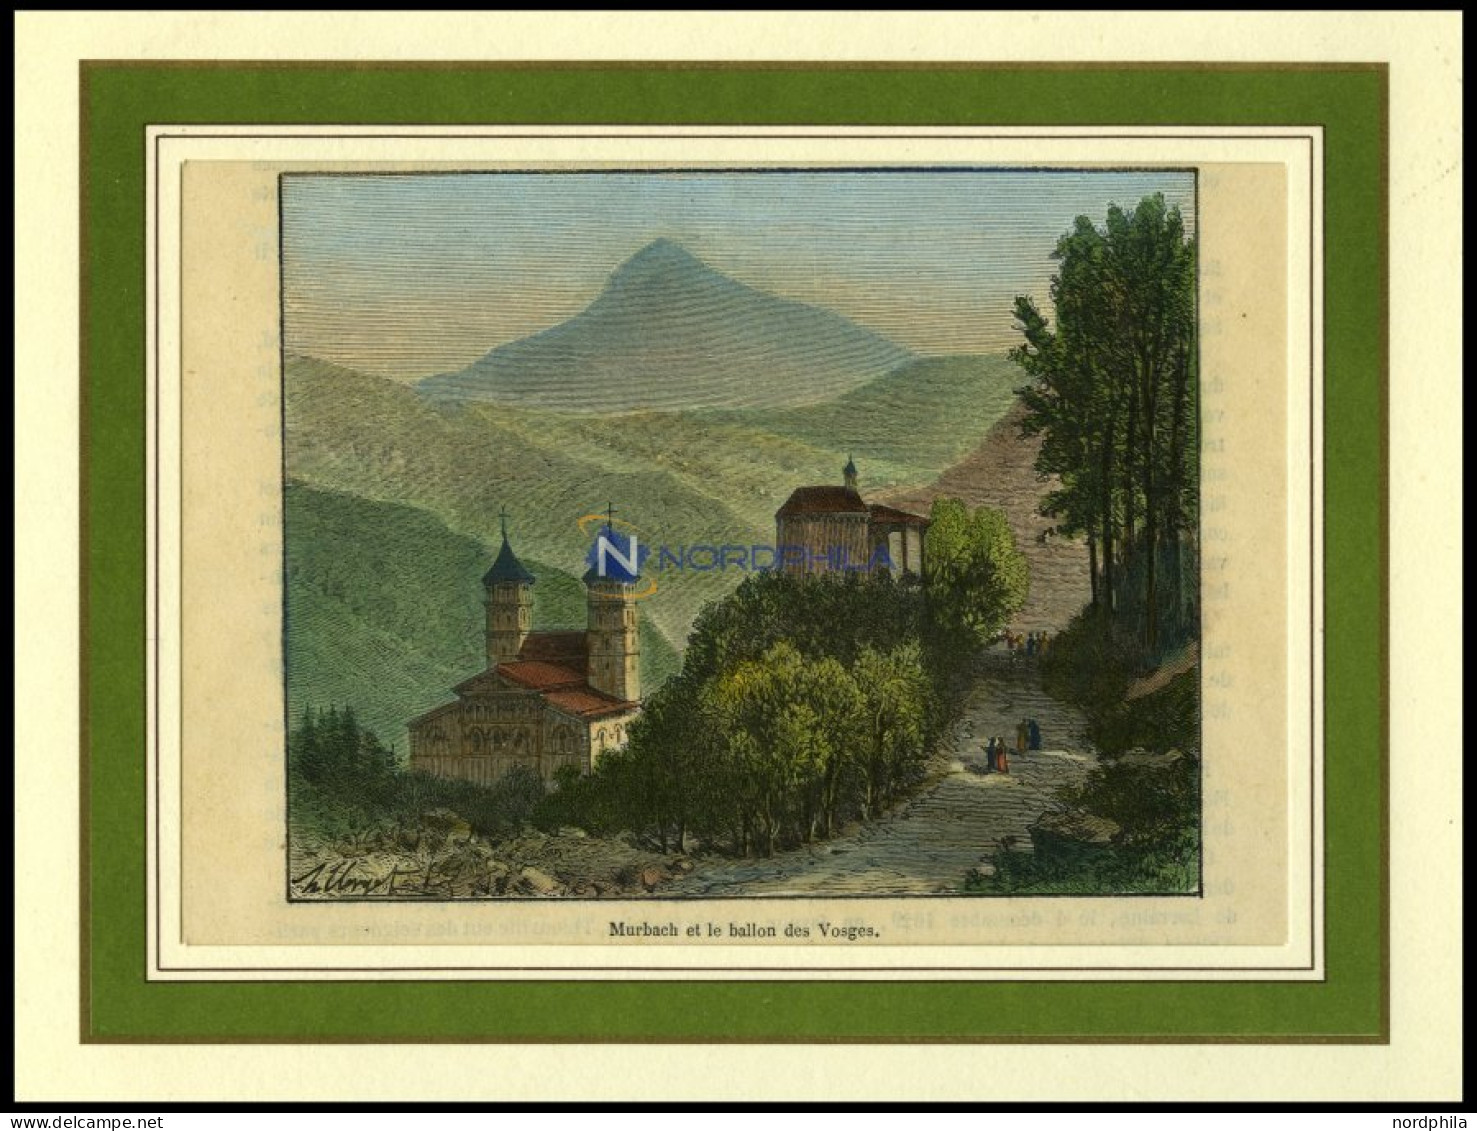 MURBACH, Gesamtansicht, Kolorierter Holzstich Aus Malte-Brun Um 1880 - Litografía